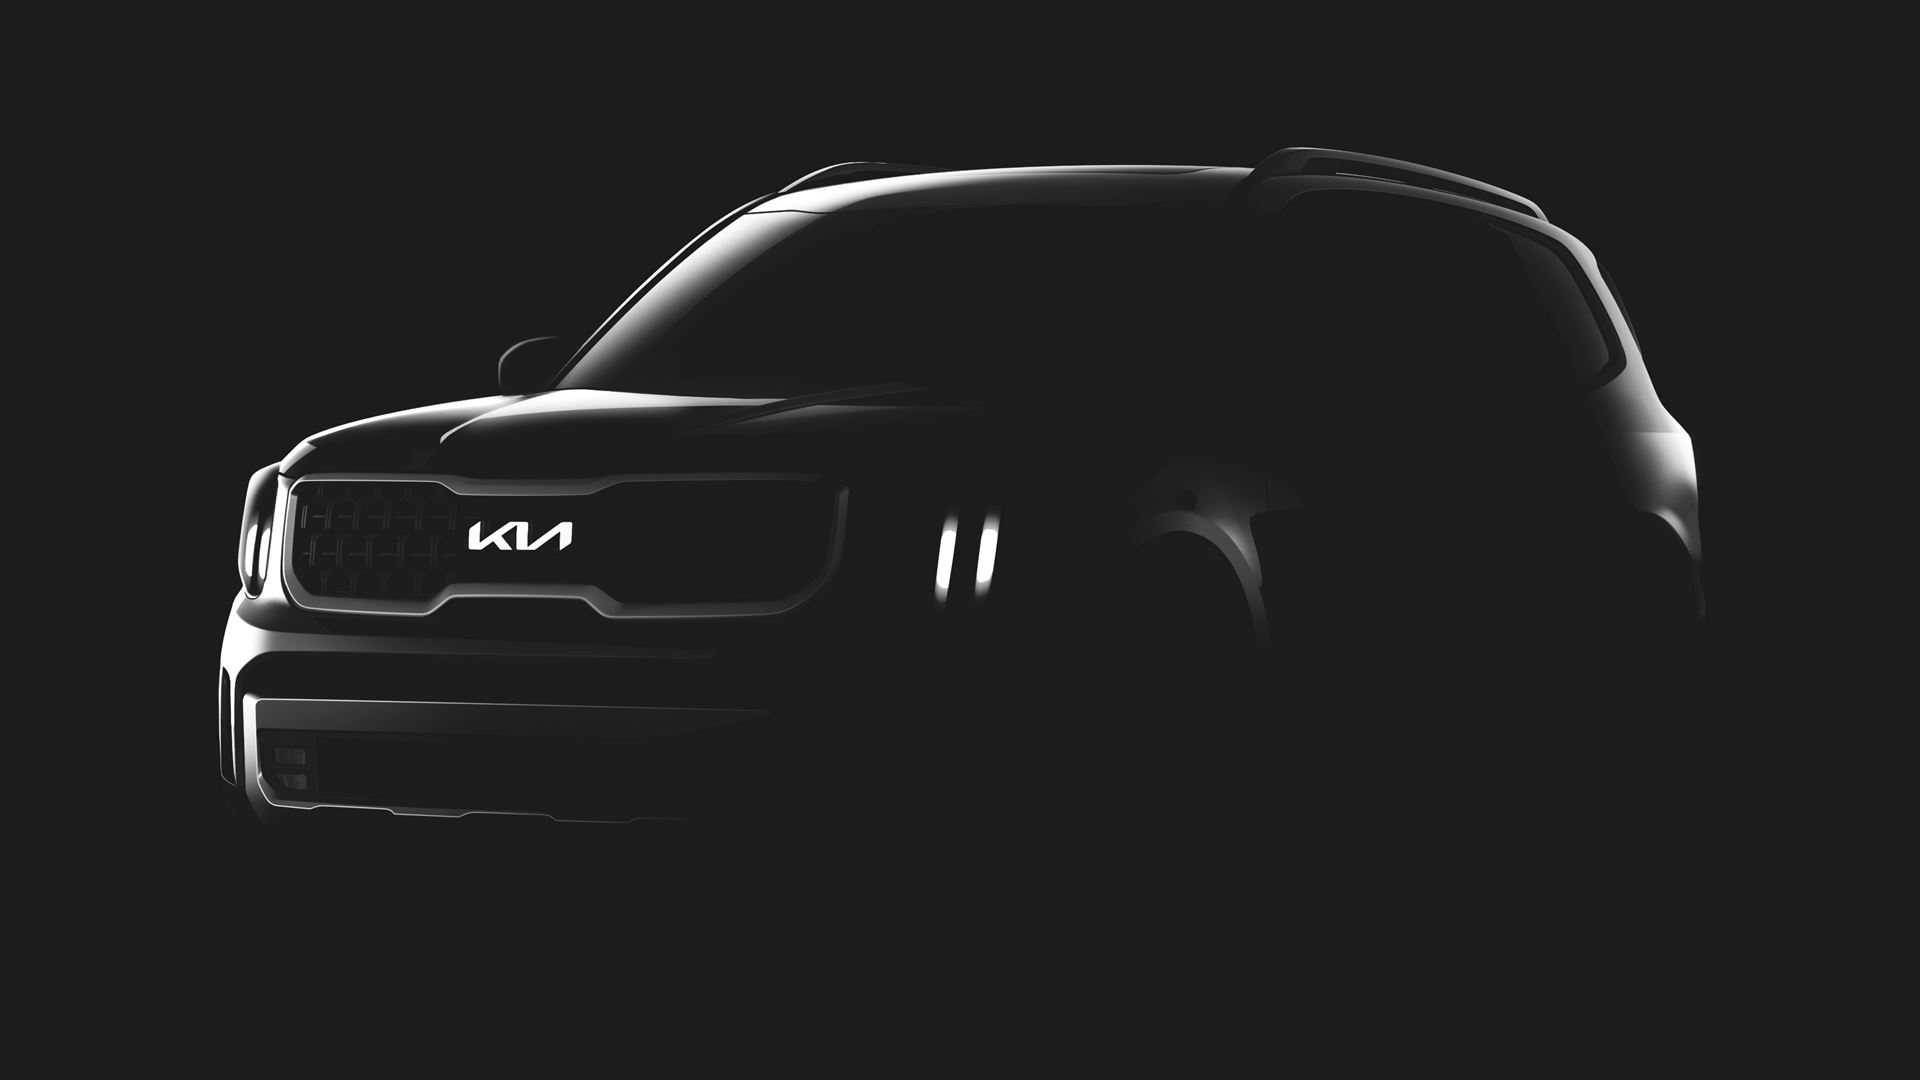 Kia teases the new Telluride SUV